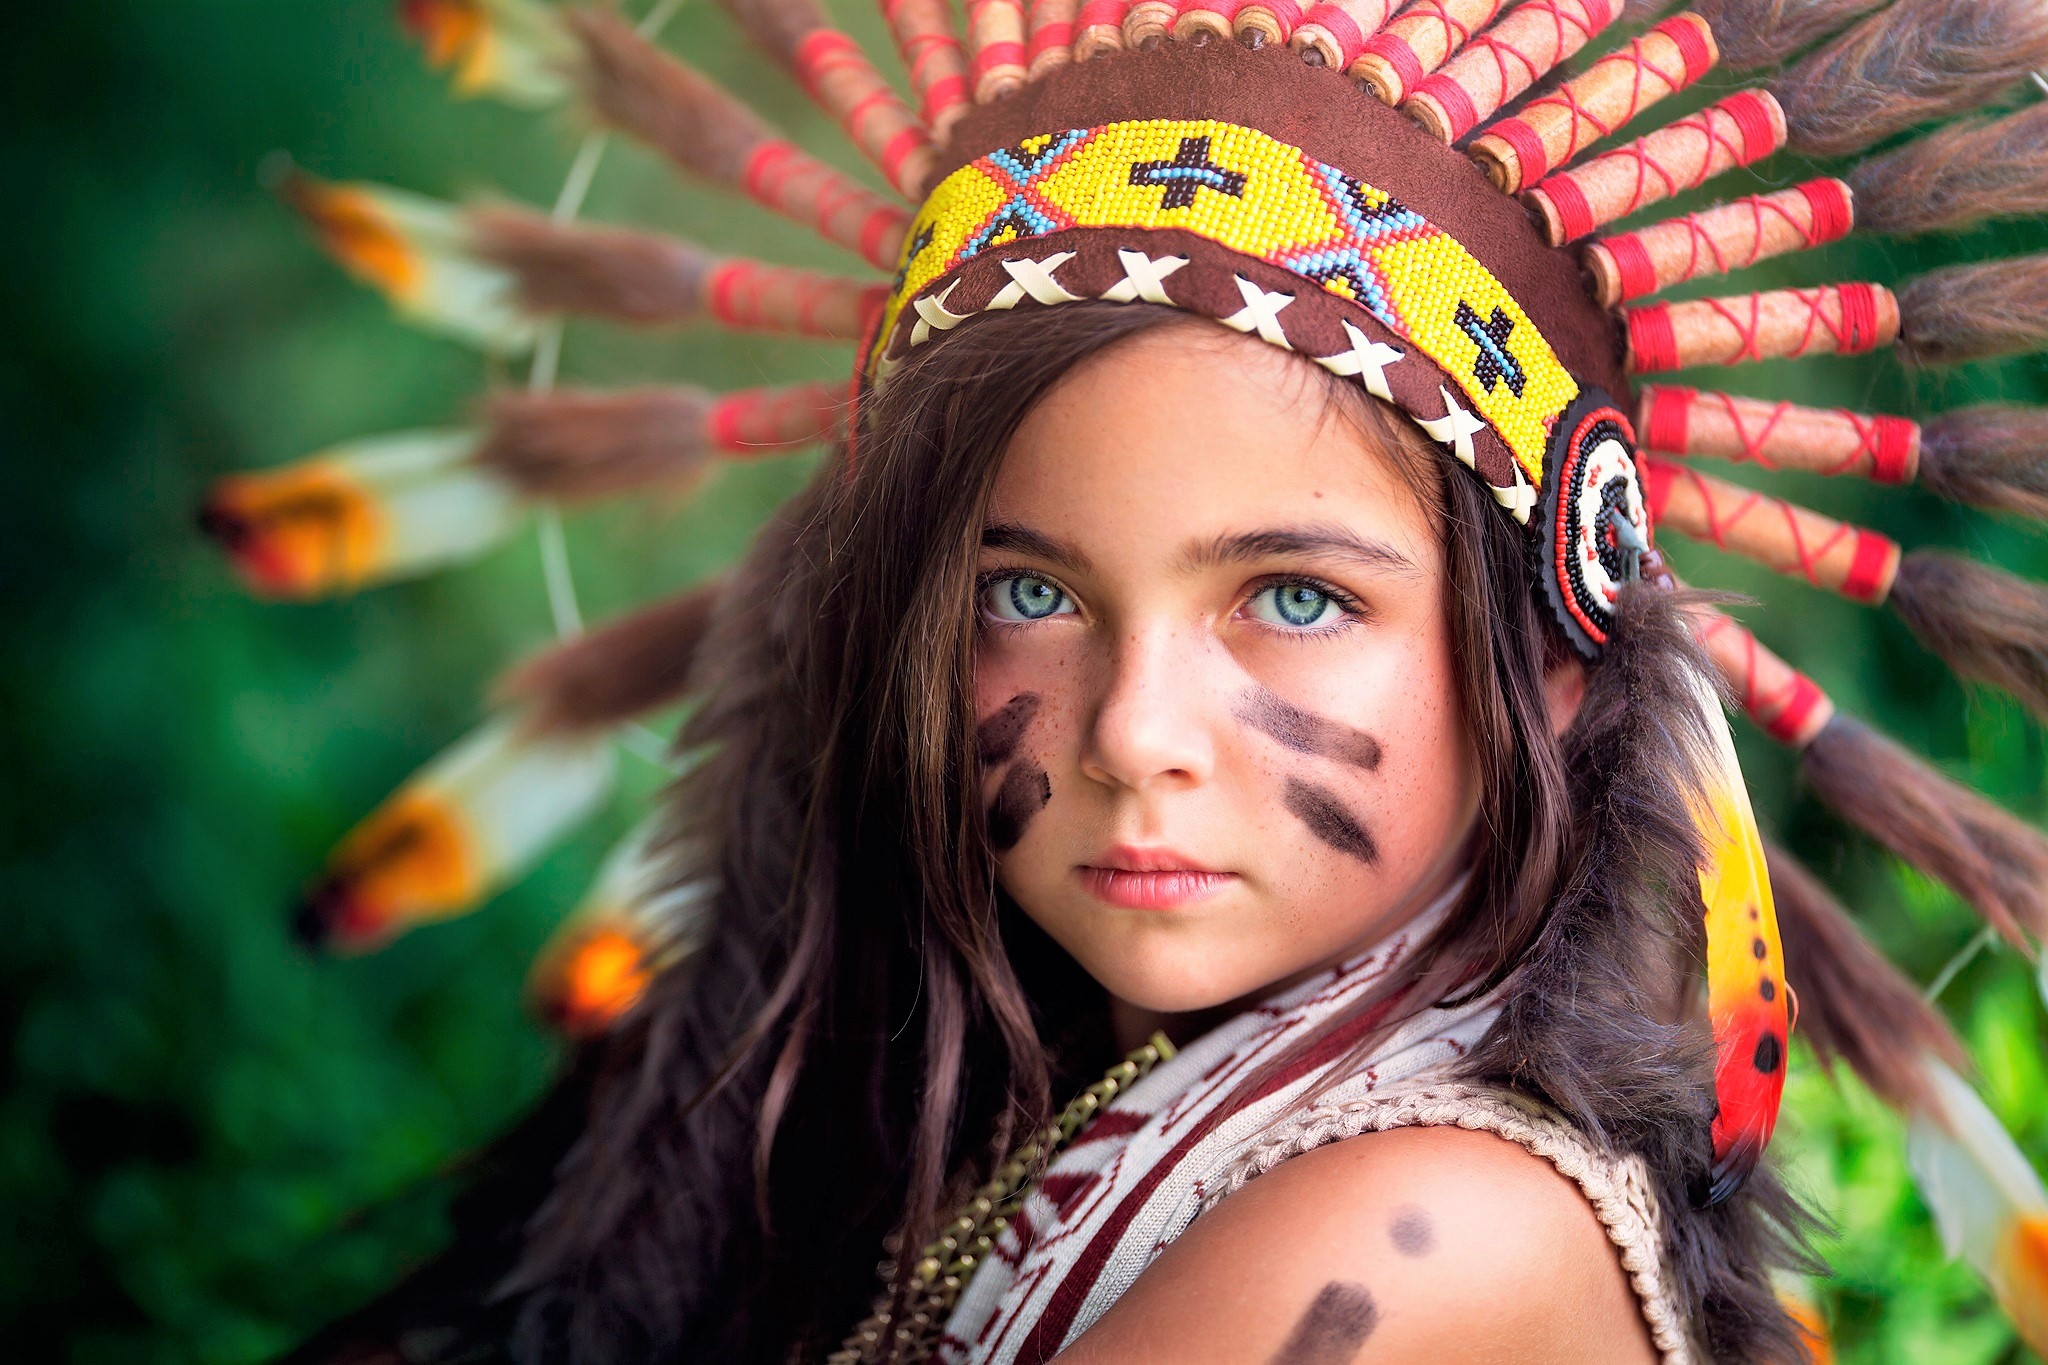 Раскраска индейцев на лице - 76 фото